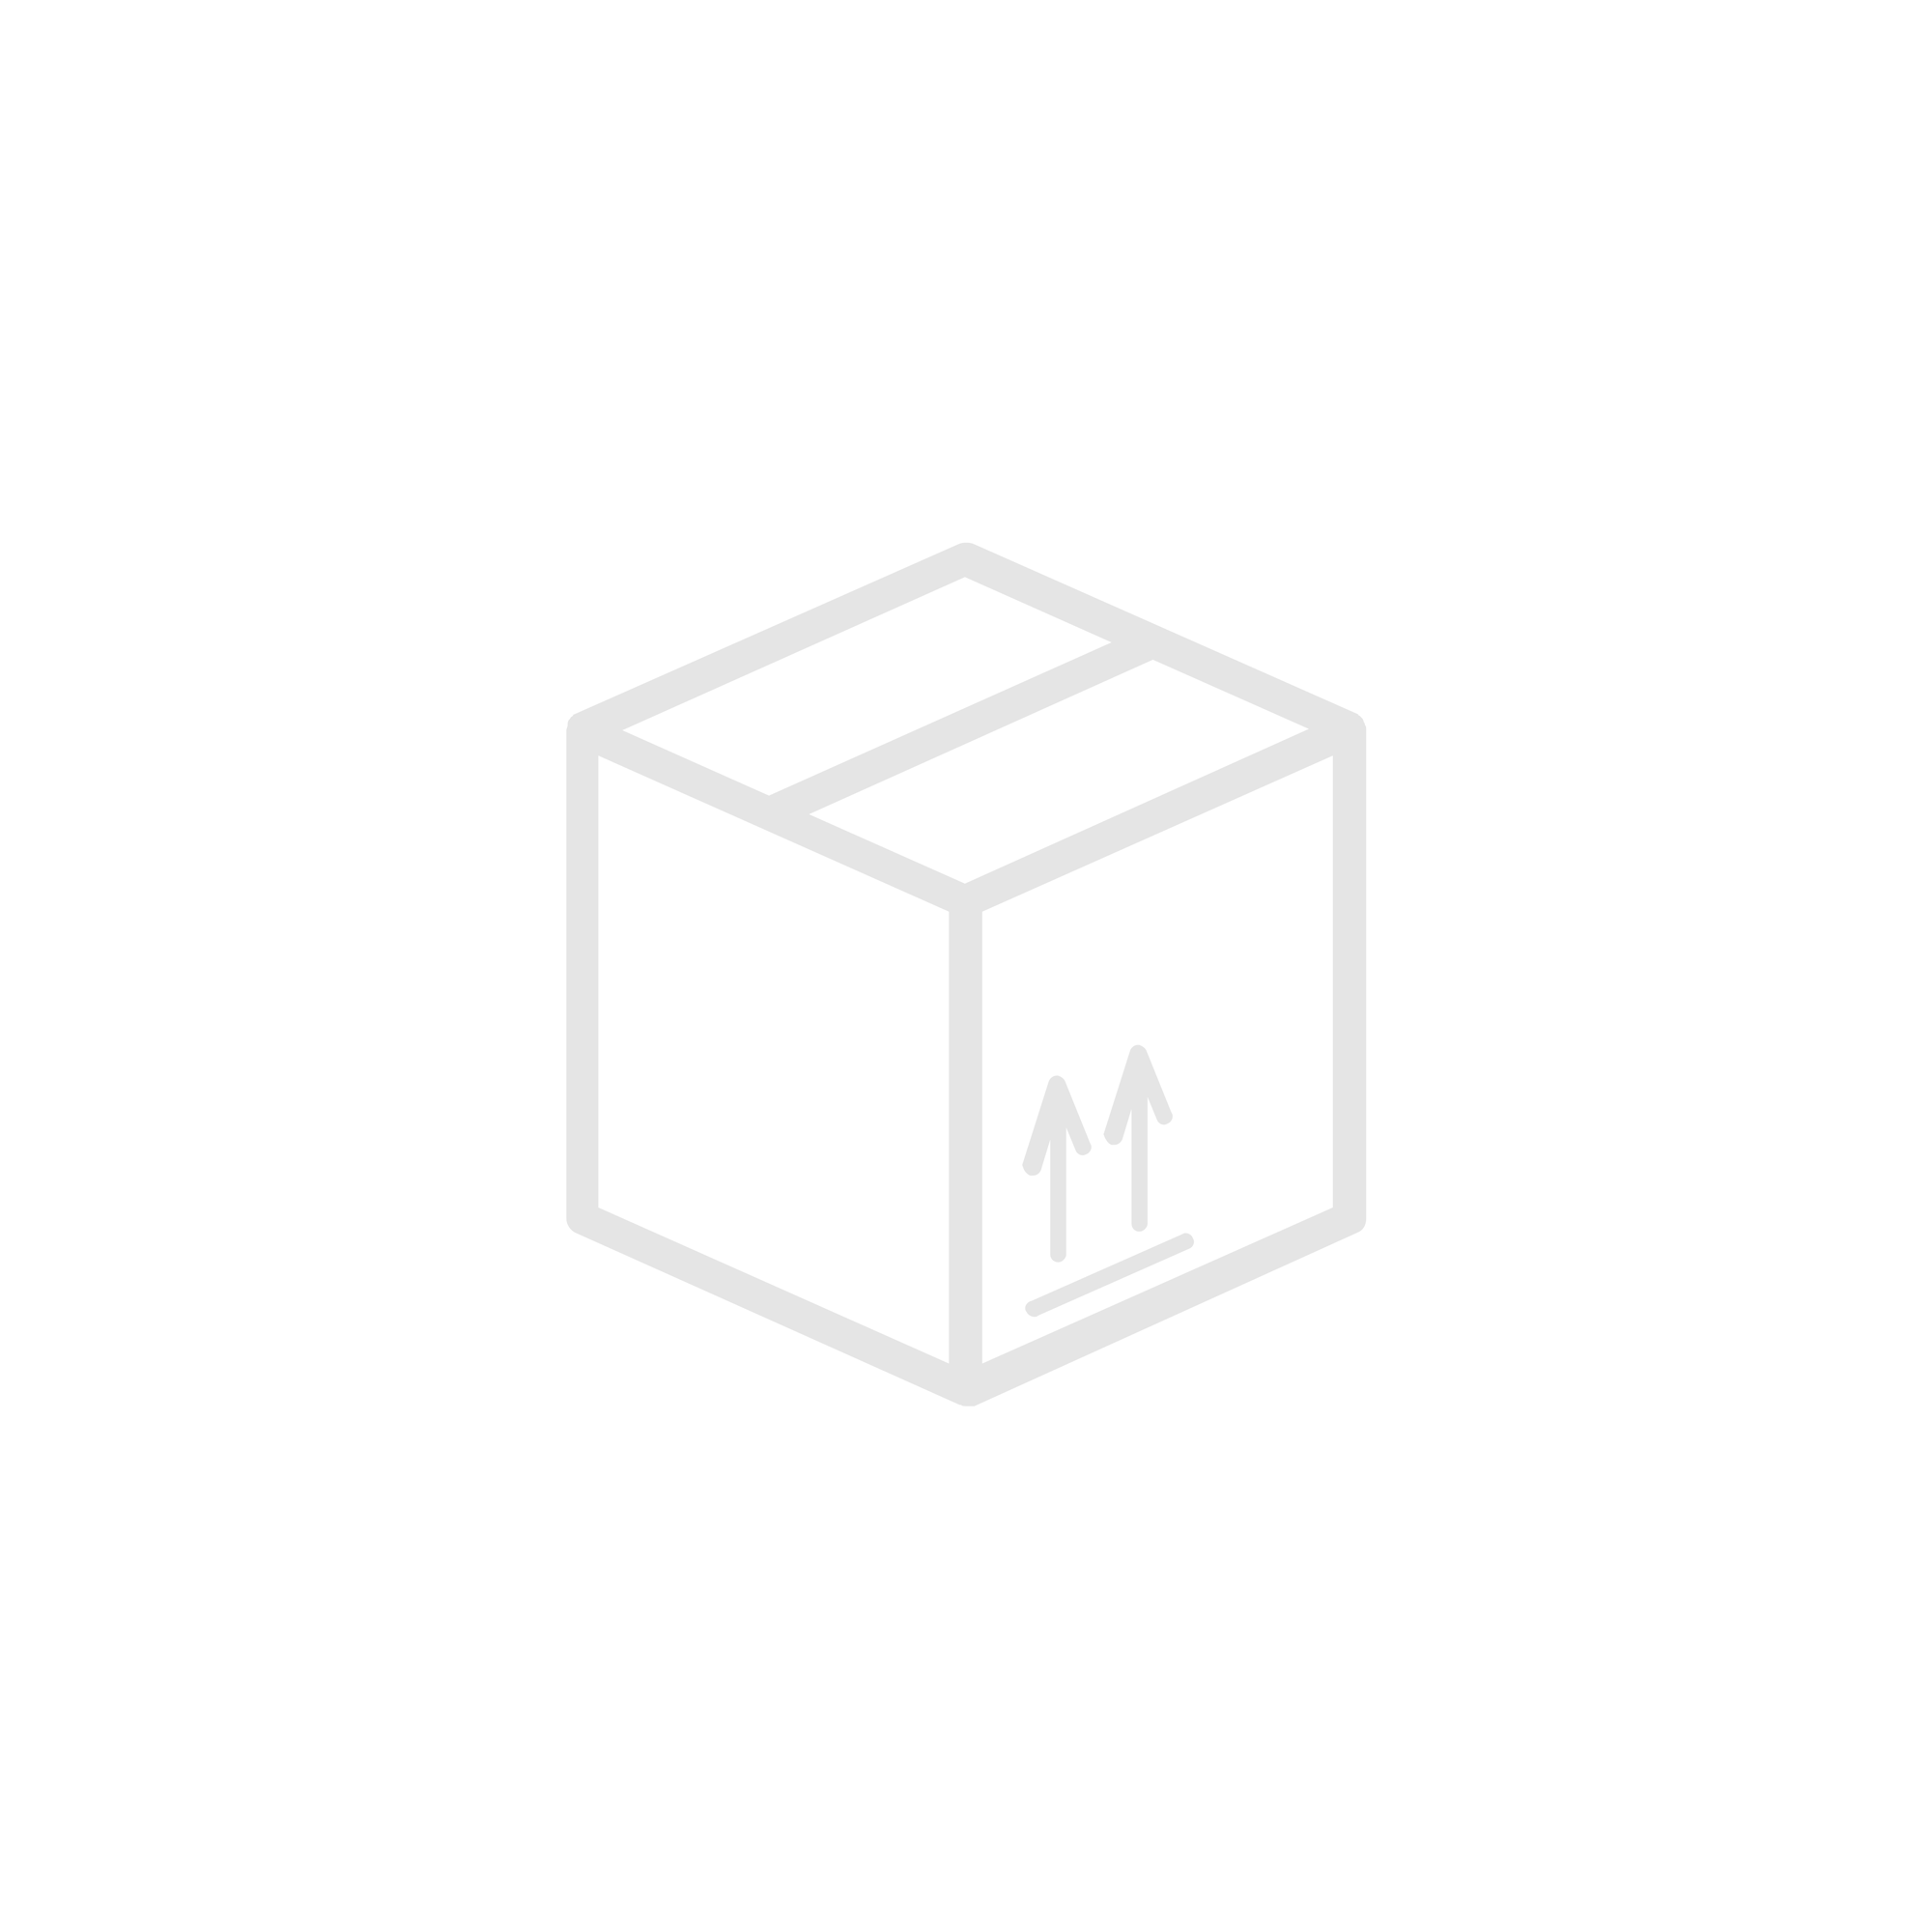 Łącznik świecznikowy + Gniazdo zasilające Schuko, pion, z ochroną styków TEKNO 05-3529-143, czarny | 27136 Kanlux